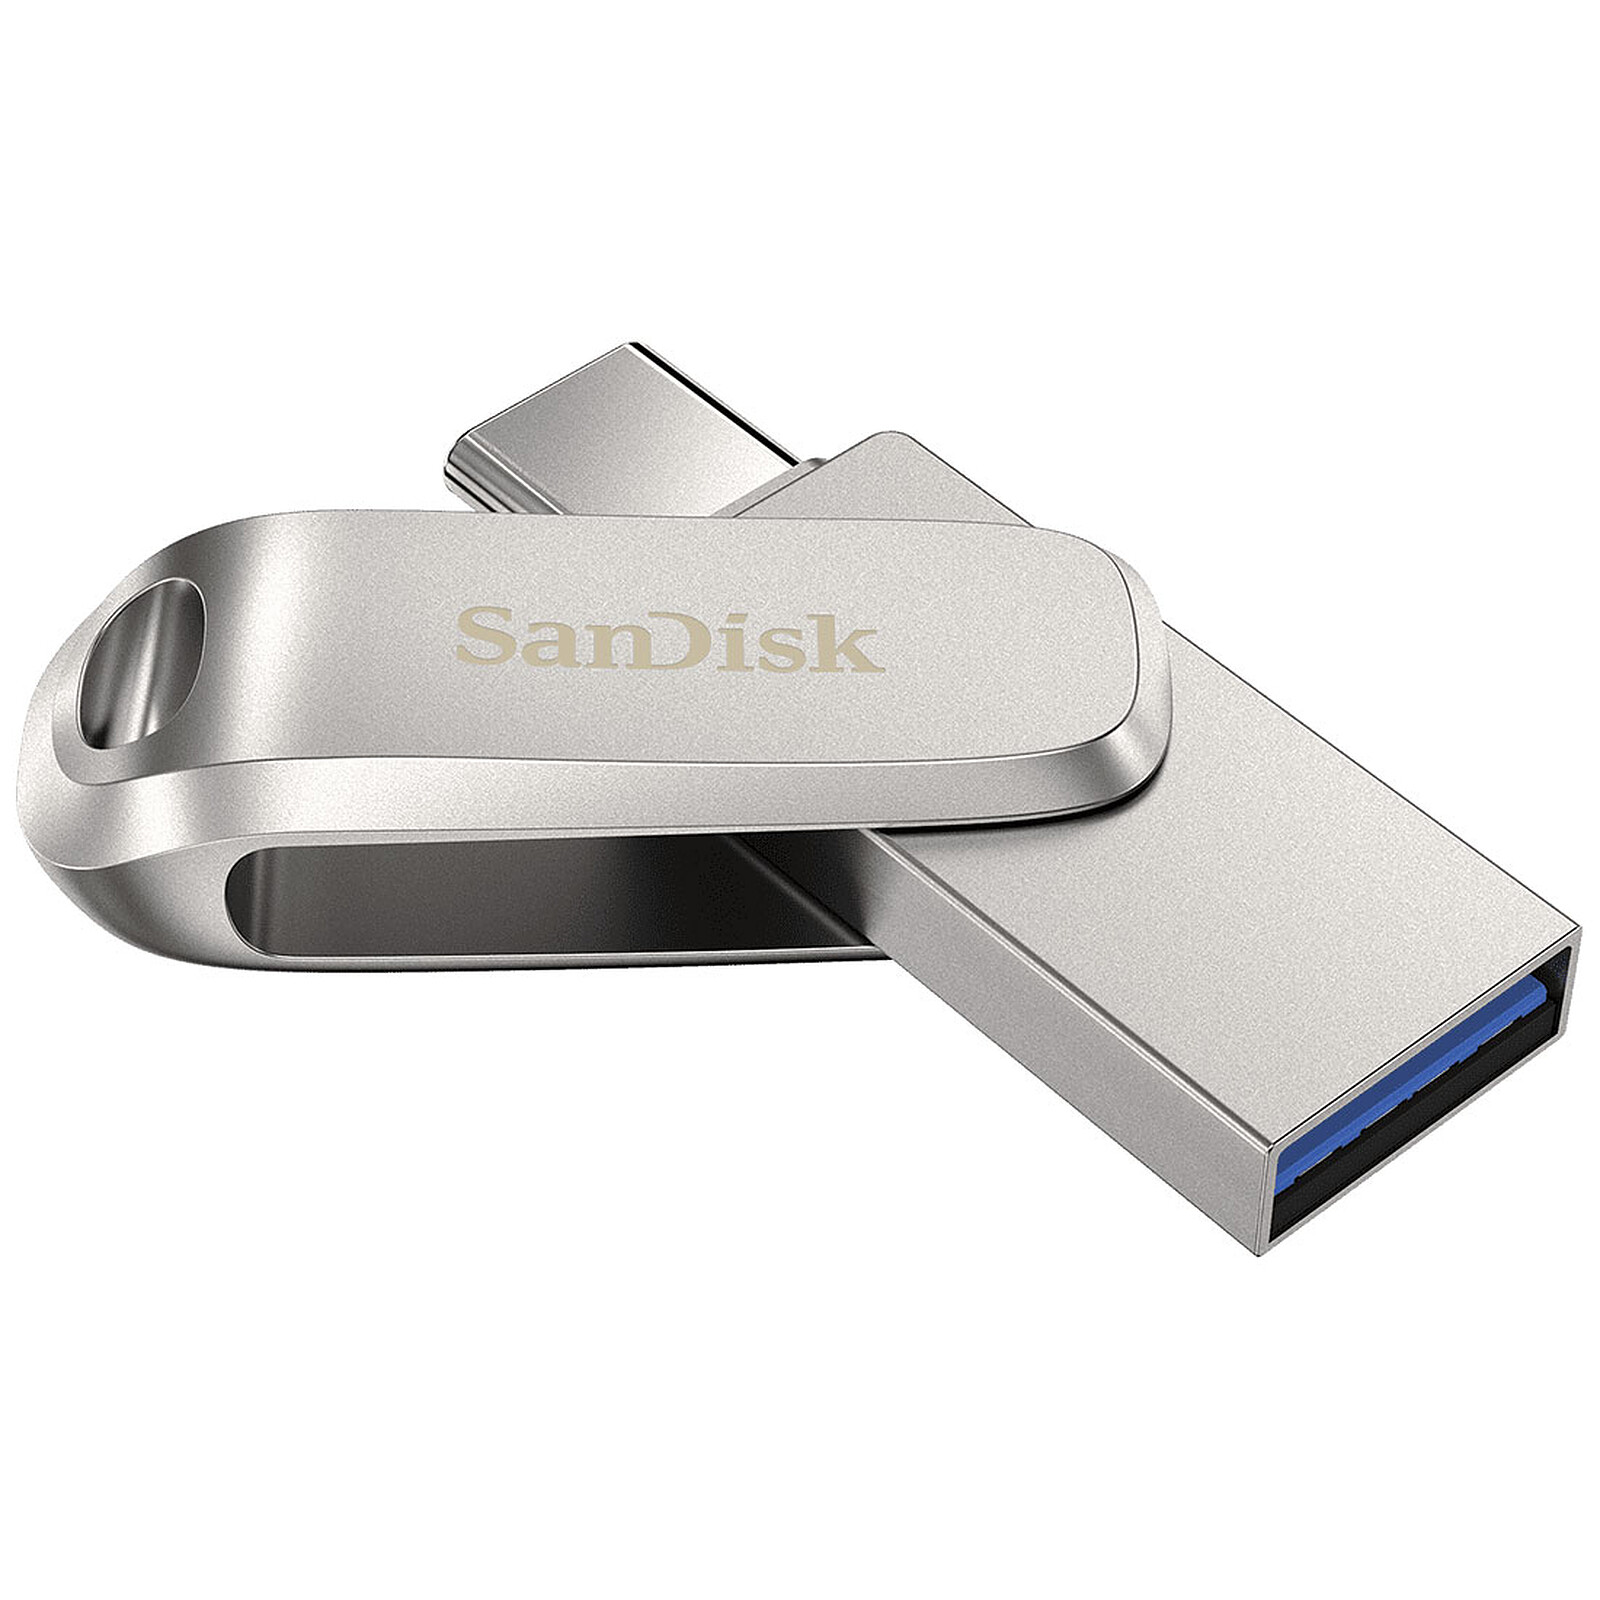  39% de réduction sur cette clé USB 1 To SanDisk